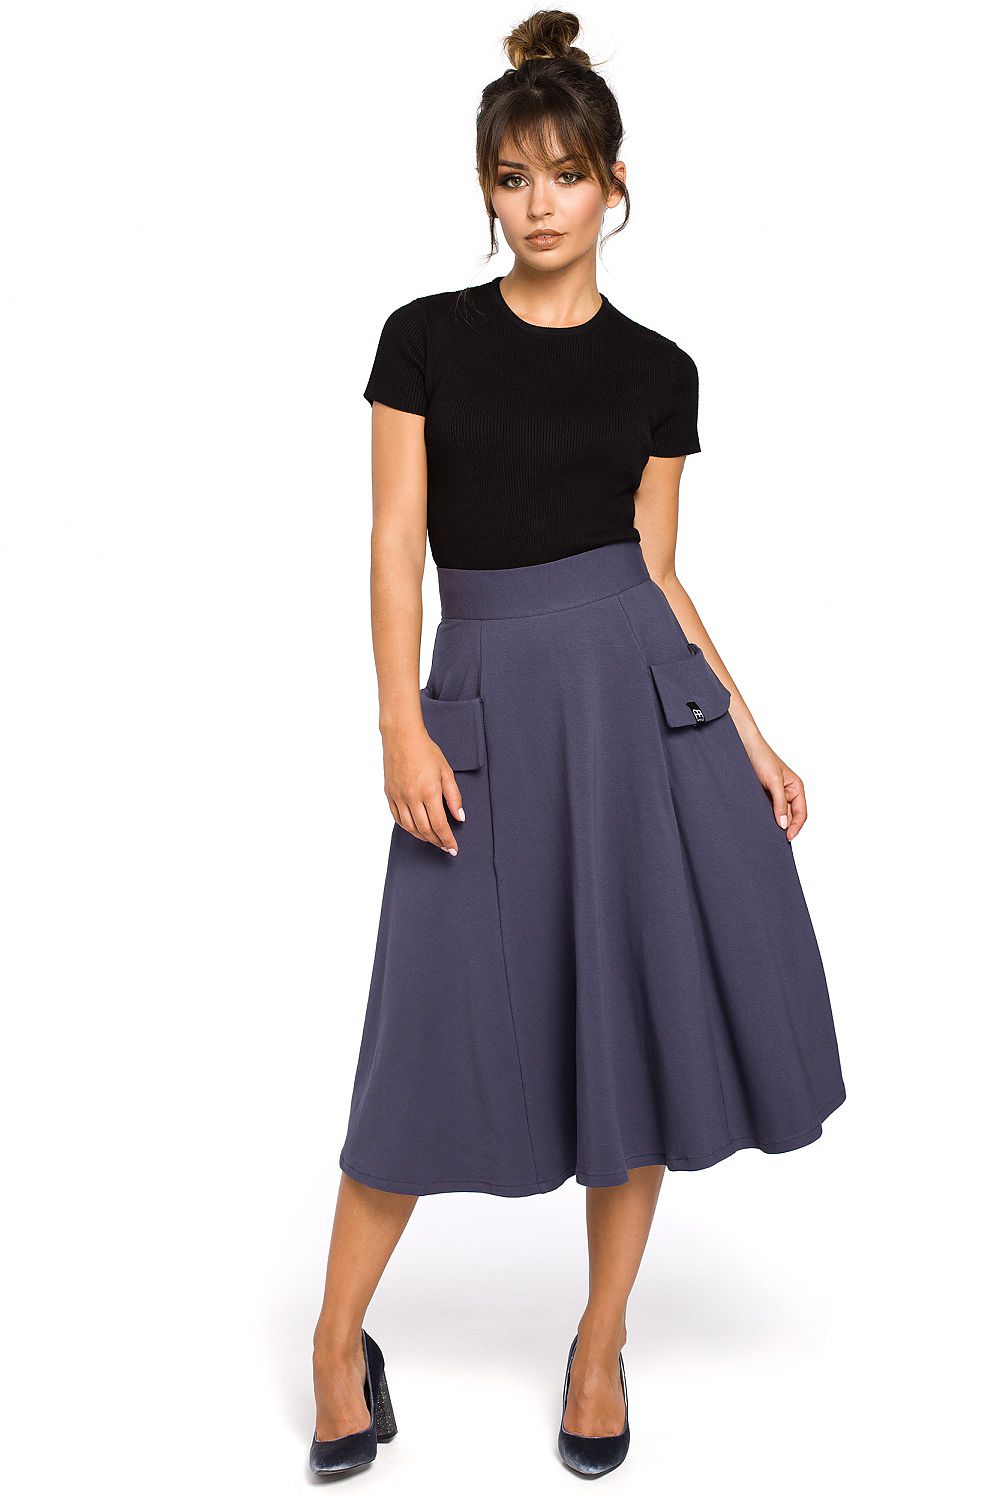 TEEK - Flap Boom Skirt Blue SKIRT theteekdotcom L  